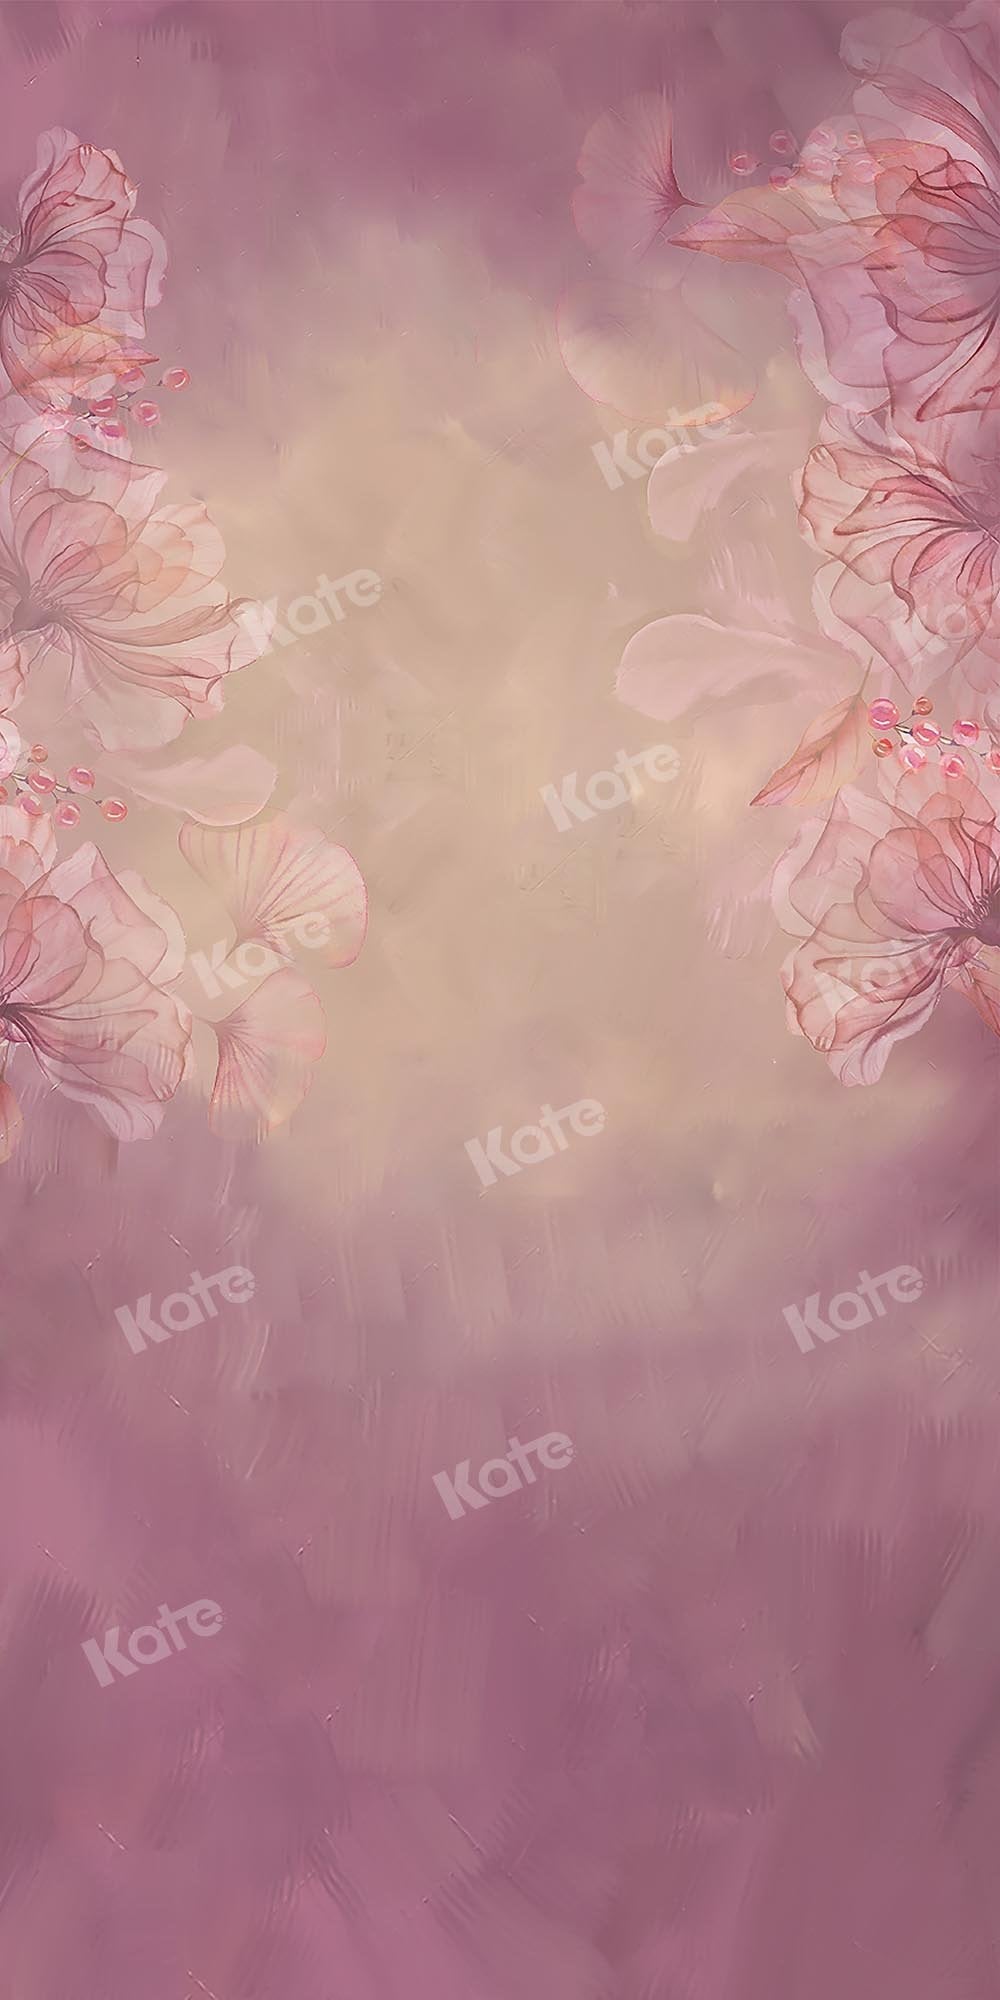 Kate Sweep Fine Art Blumen verschwommener rosa Hintergrund von GQ